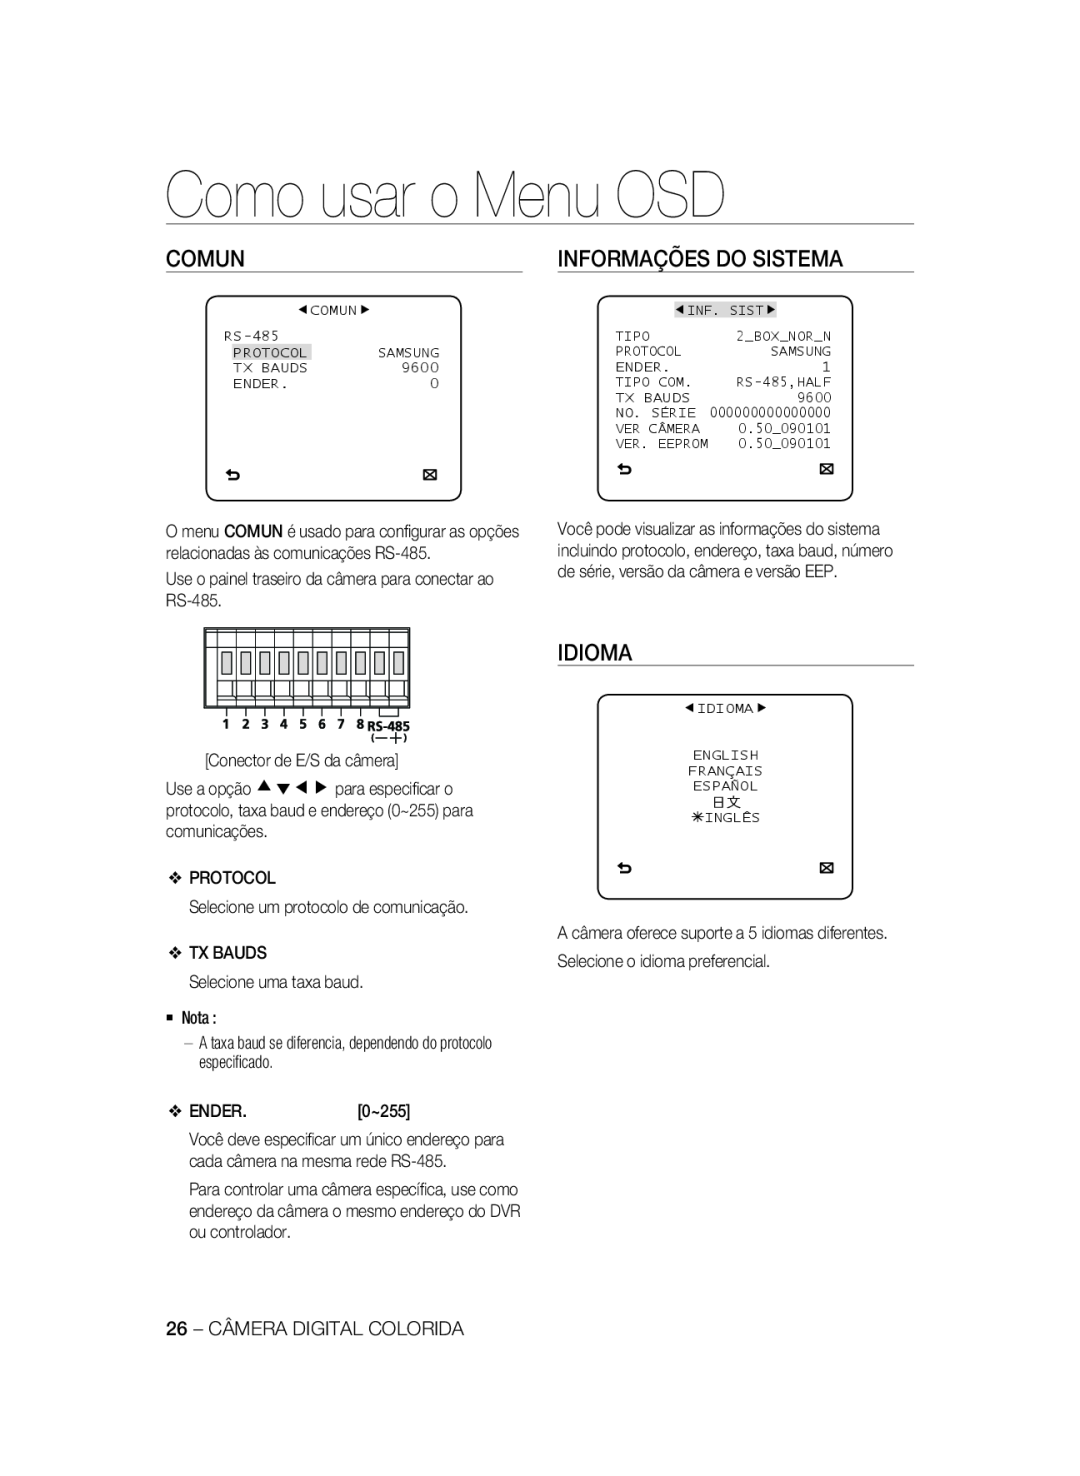 Samsung SCC-A2333P Comun, Informações Do Sistema, Como usar o Menu OSD, Idioma, Conector de E/S da câmera, ENDER.0~255 